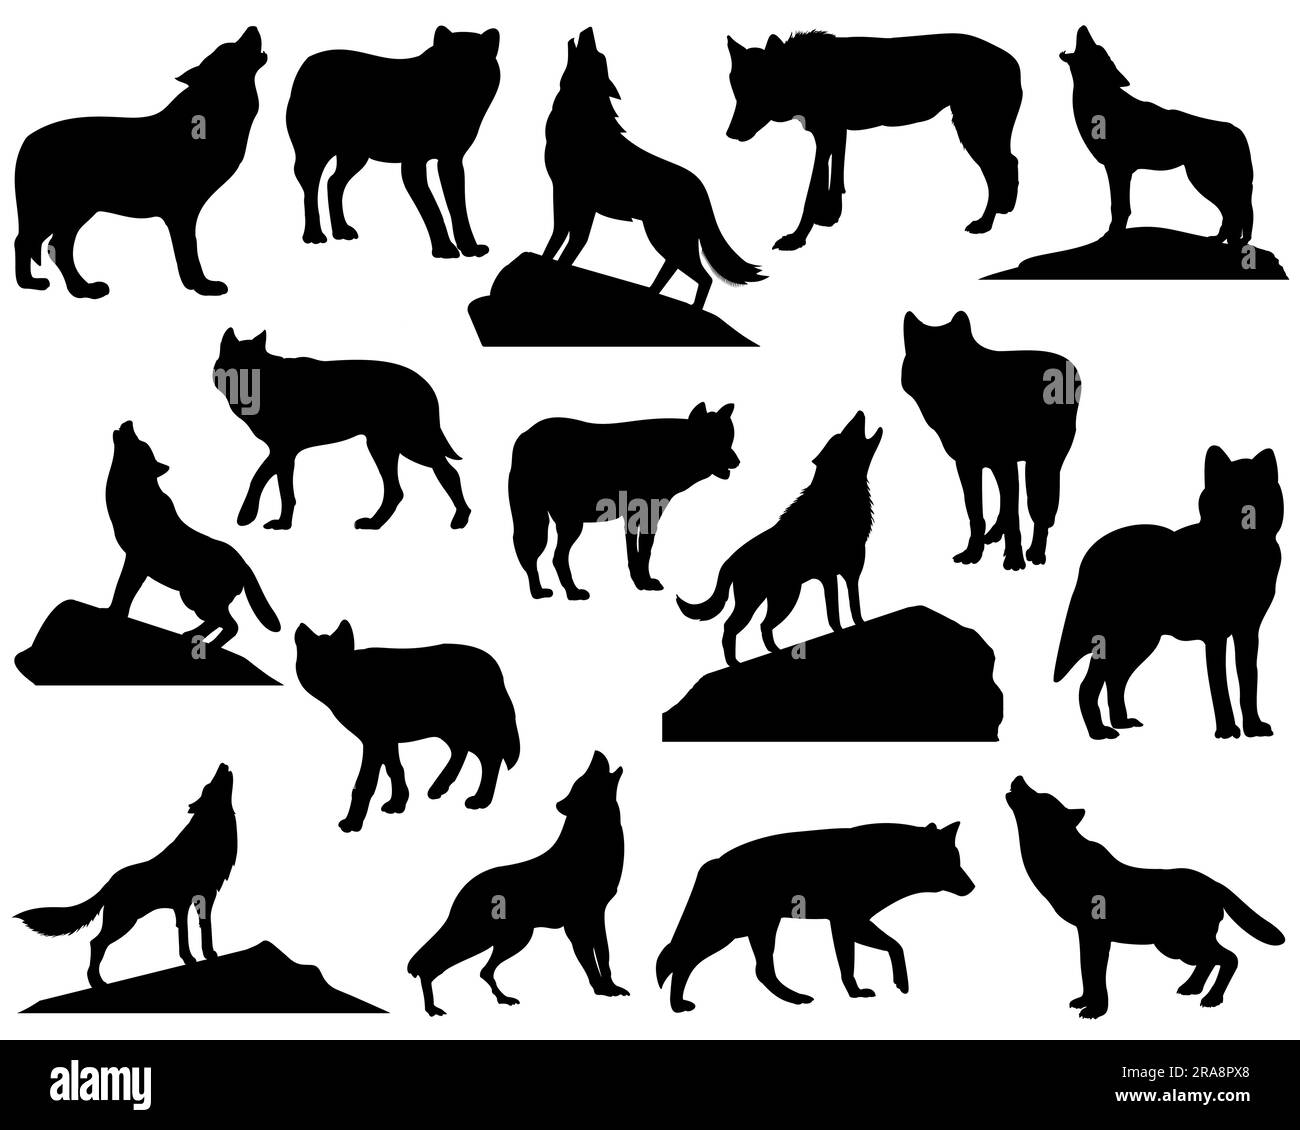 Conjunto de Howling Wolf Silhouette Vector Art sobre fondo blanco Ilustración del Vector